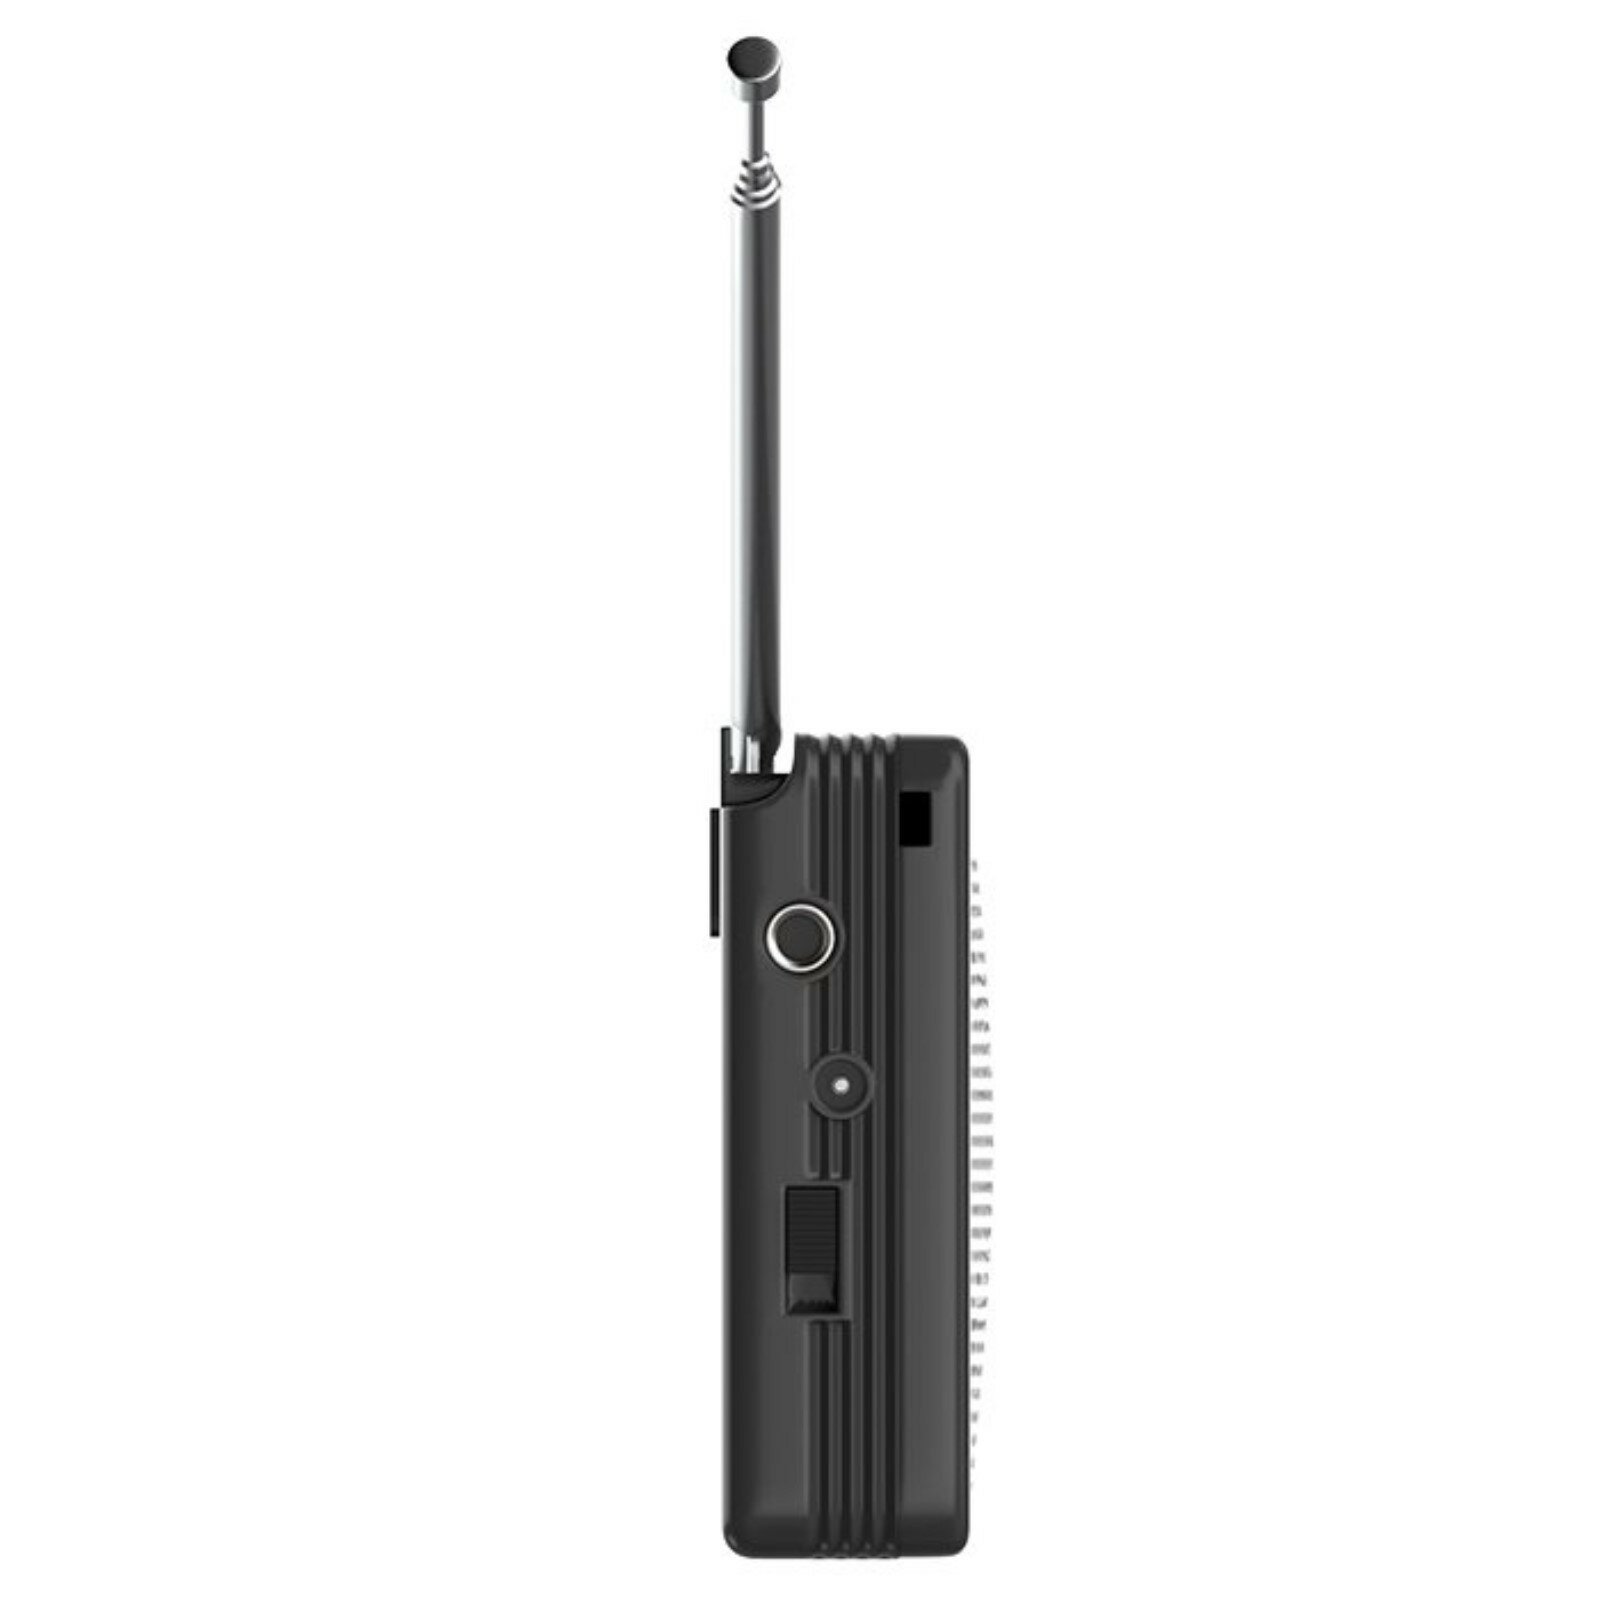 Радиоприемник Maxvi PR-01 FM 76-108 МГц AM 525-1600 КГц серый